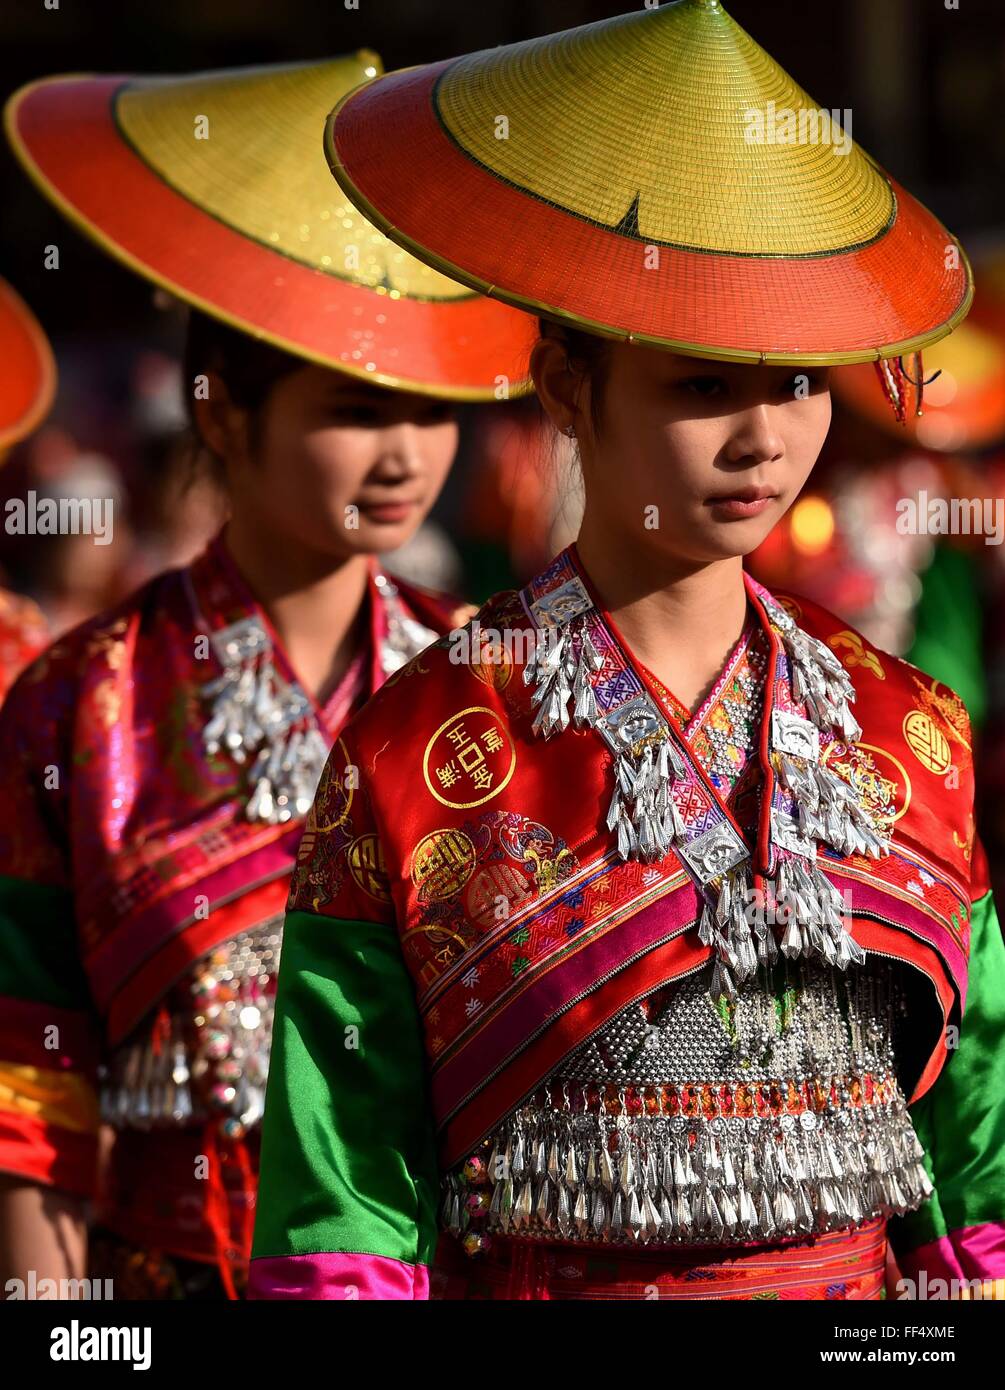 Xinping, la province chinoise du Yunnan. Feb 11, 2016. Les gens de l'ethnie Dai Huayao participent à un défilé pour célébrer la traditionnelle "Huajie' festival dans Jiasa Yi-Dai Canton de Xinping comté autonome, le sud-ouest de la province chinoise du Yunnan, le 11 février 2016. Dai Huayao groupe ethnique, d'être nommé pour costume coloré décorations sur les gens de sa taille, est une succursale de Dai groupe ethnique. Credit : Lin Yiguang/Xinhua/Alamy Live News Banque D'Images